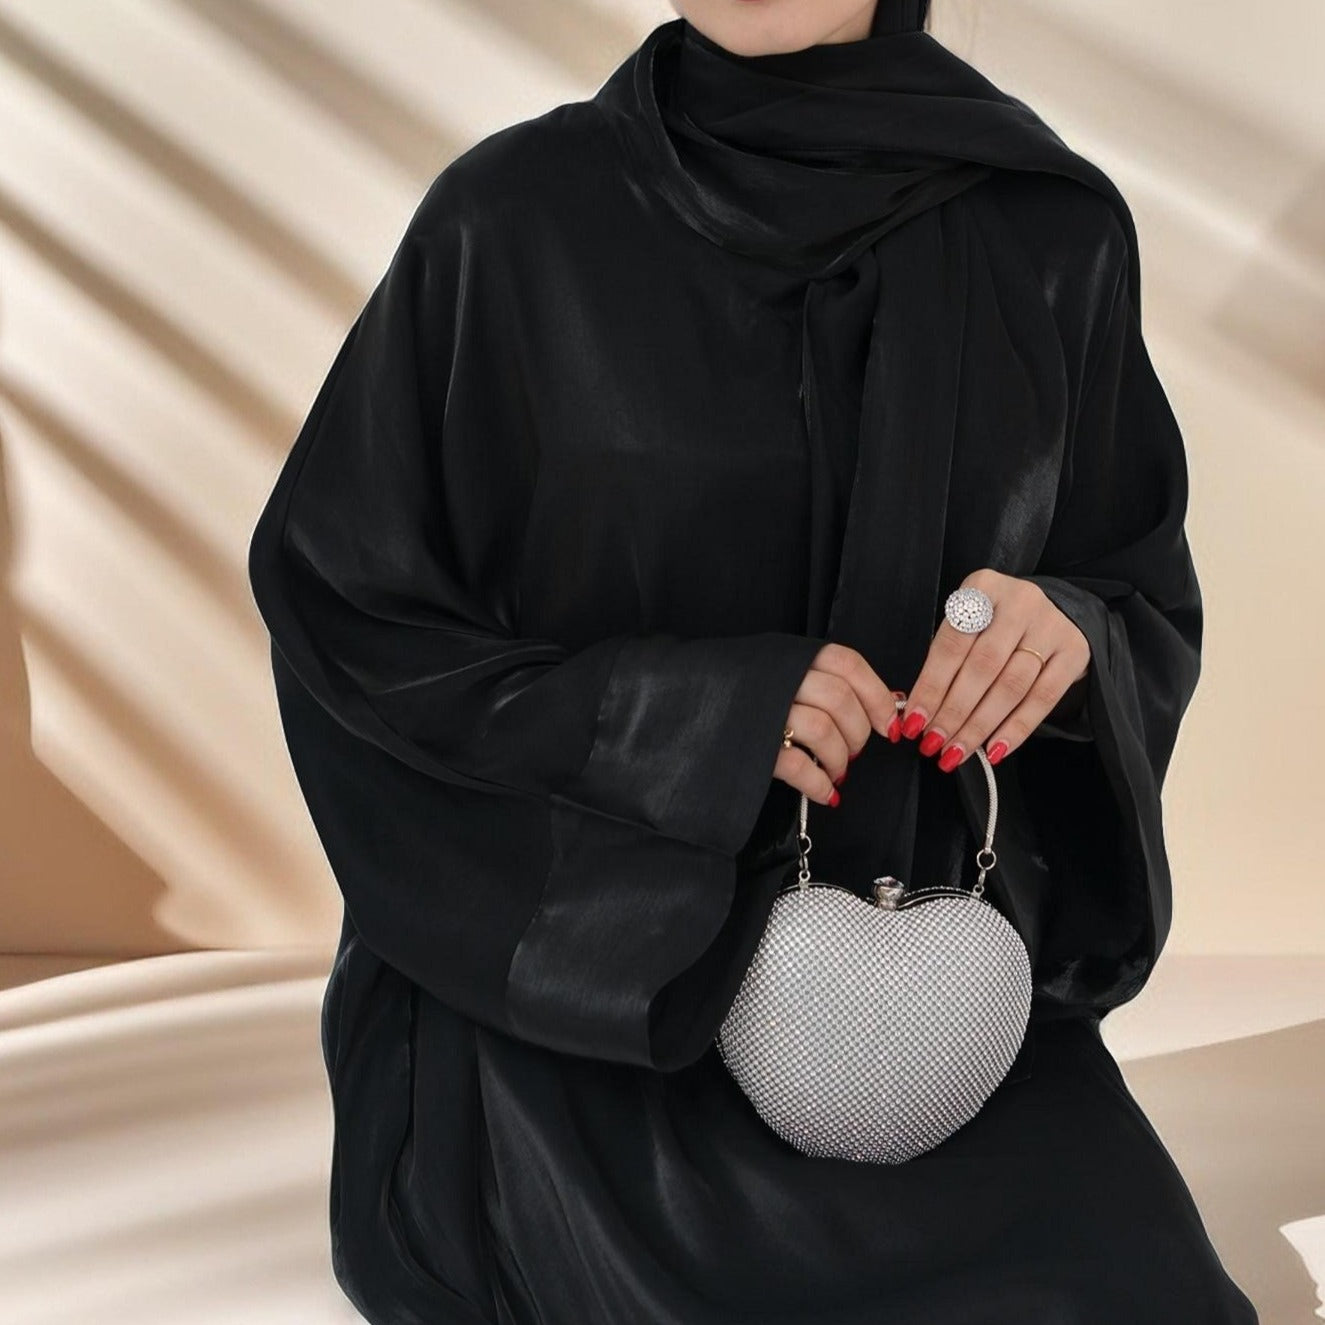 Lichtgevende luxe Abaya met bijgevoegde hijab